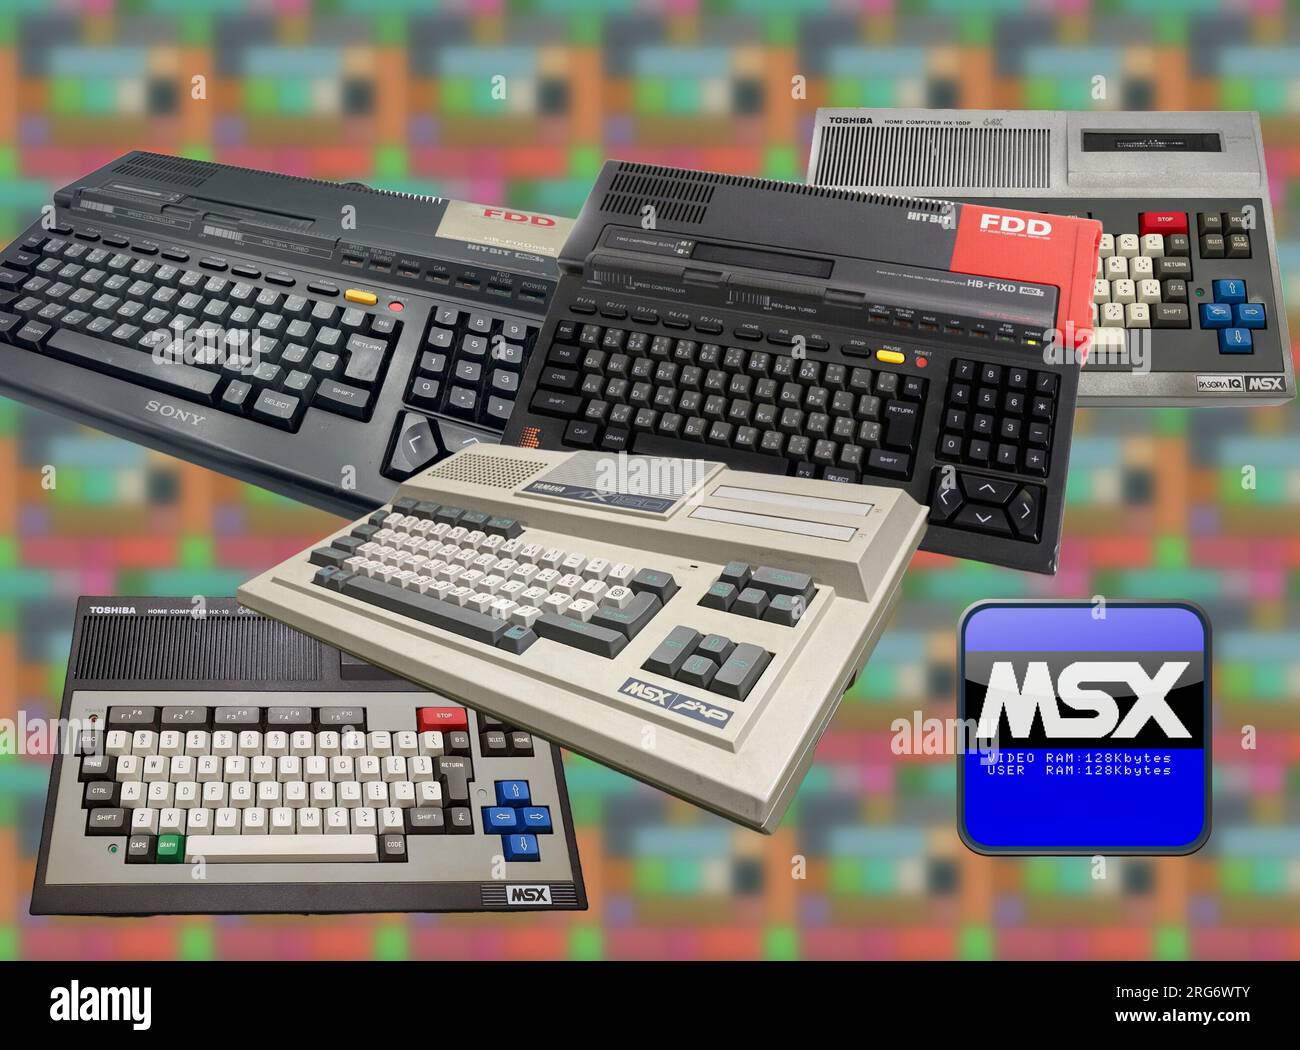 Dal 1983 al 1993 molti produttori di computer (specialmente in Giappone) adottarono uno standard chiamato MSX Foto Stock